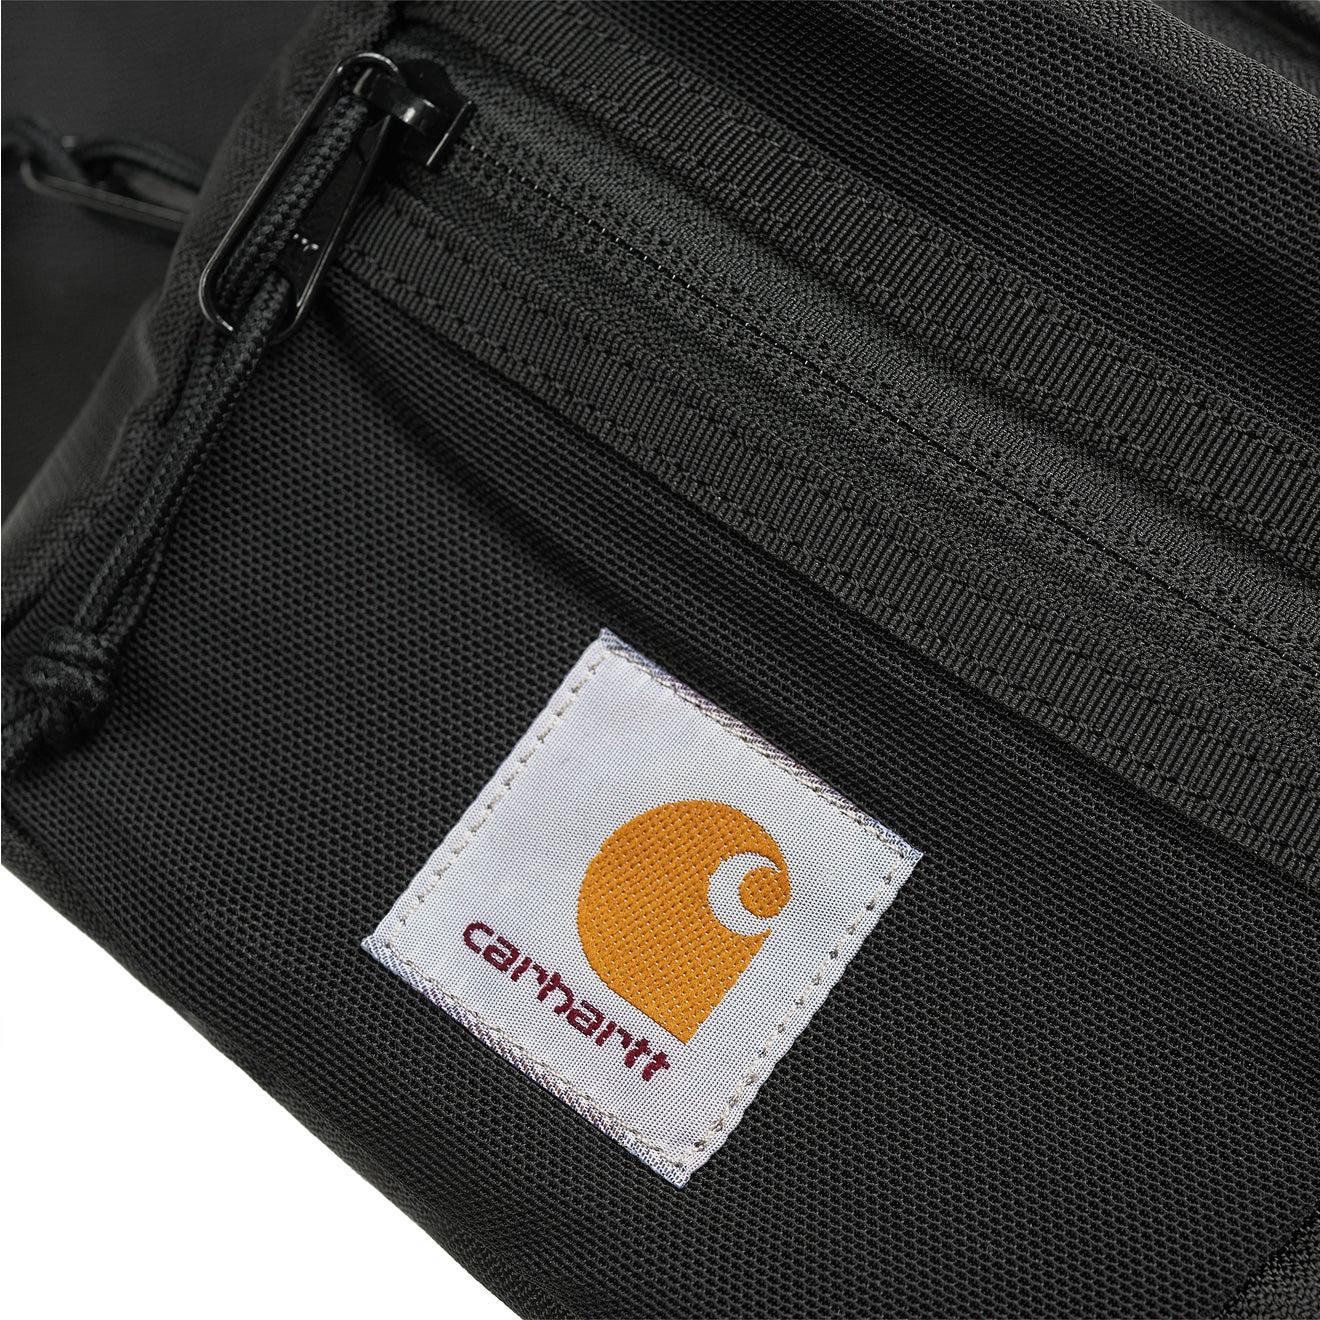 carharttwip Premium @cordurabrrandjp Delta Hip Bag 3 colores disponibles